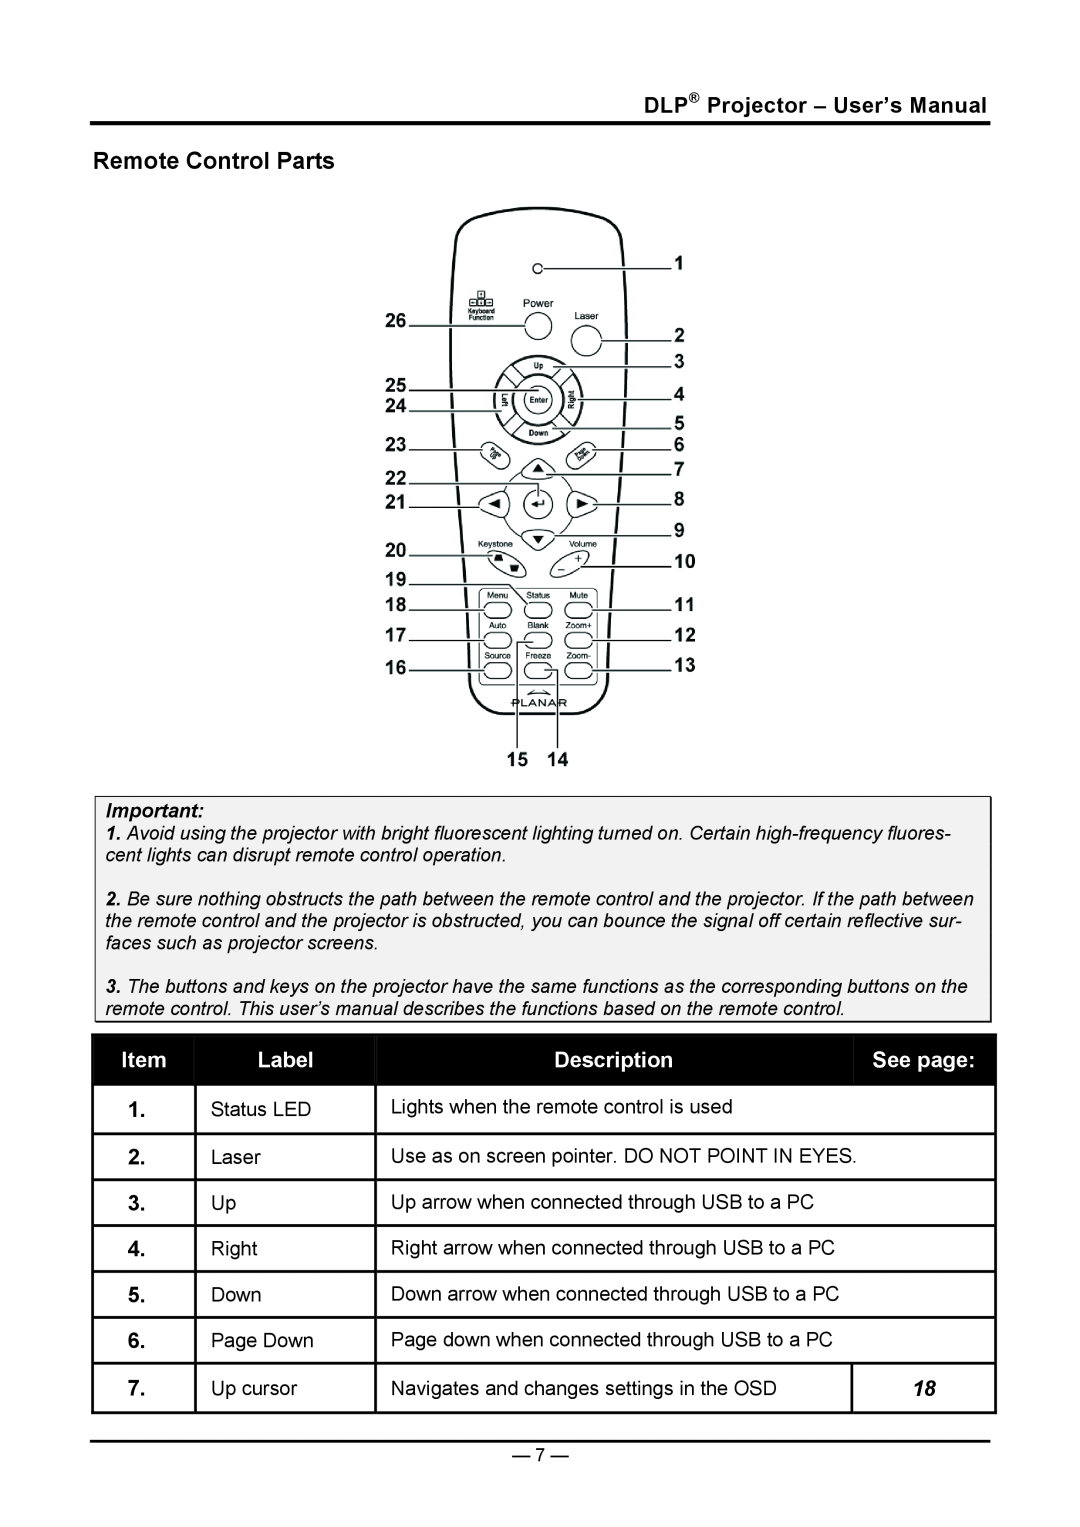 Planar PR5030 manual Remote Control Parts, DLP Projector - User’s Manual, Label, Description, See page 